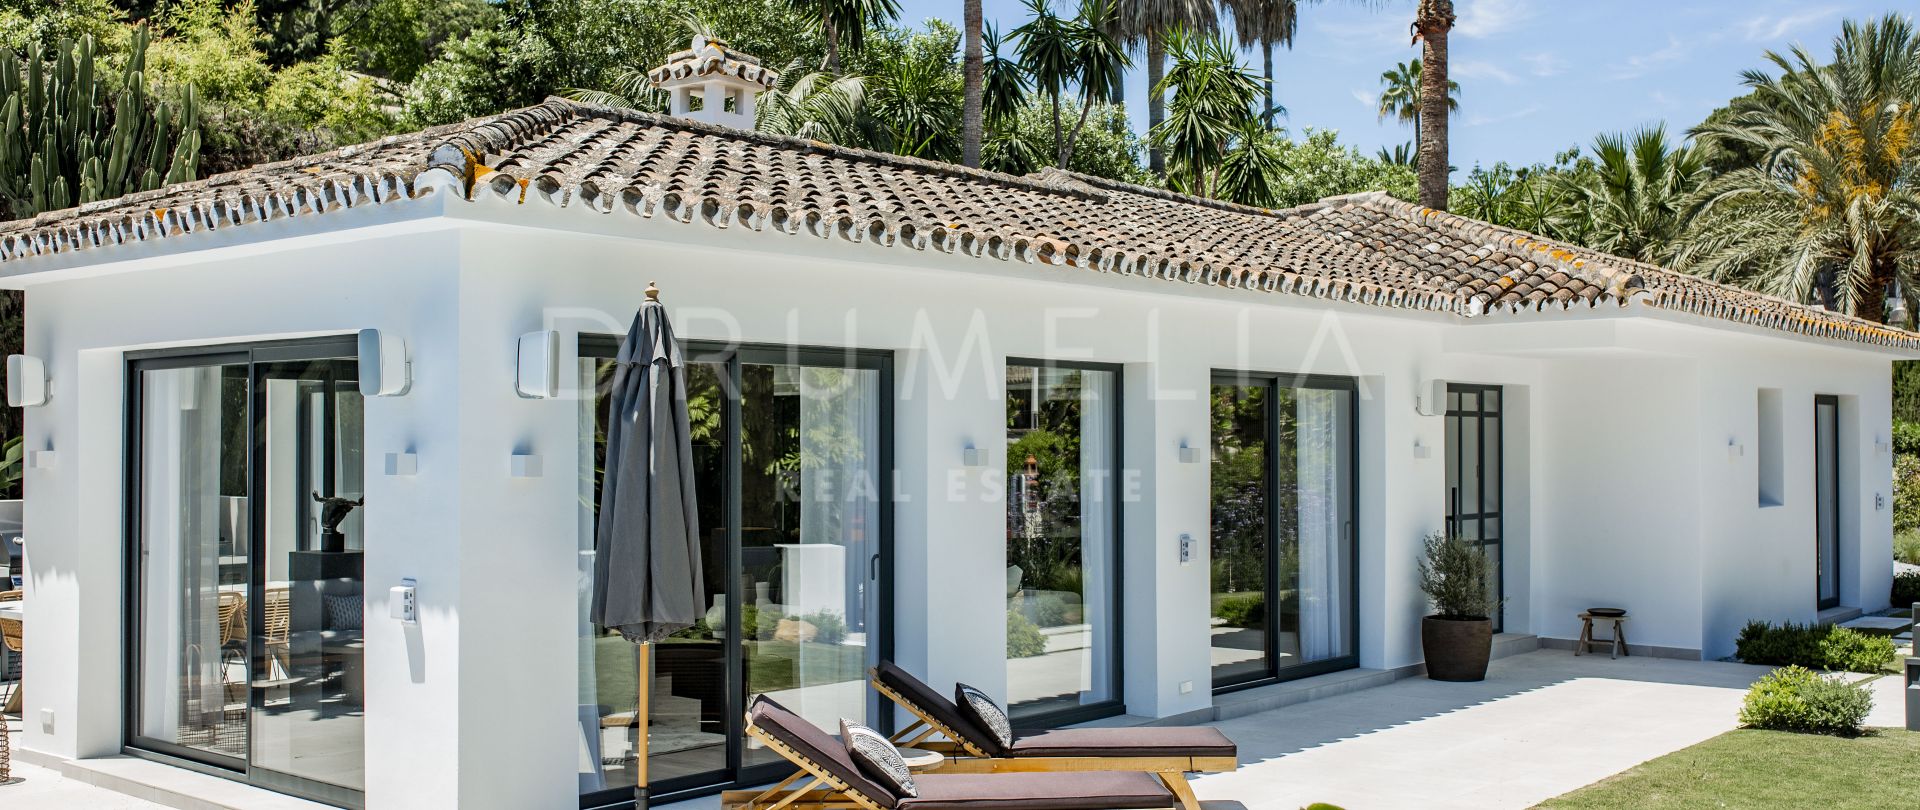 Prachtige nieuwe moderne luxe villa met Scandinavisch 'Hygge' gevoel, Nueva Andalucía